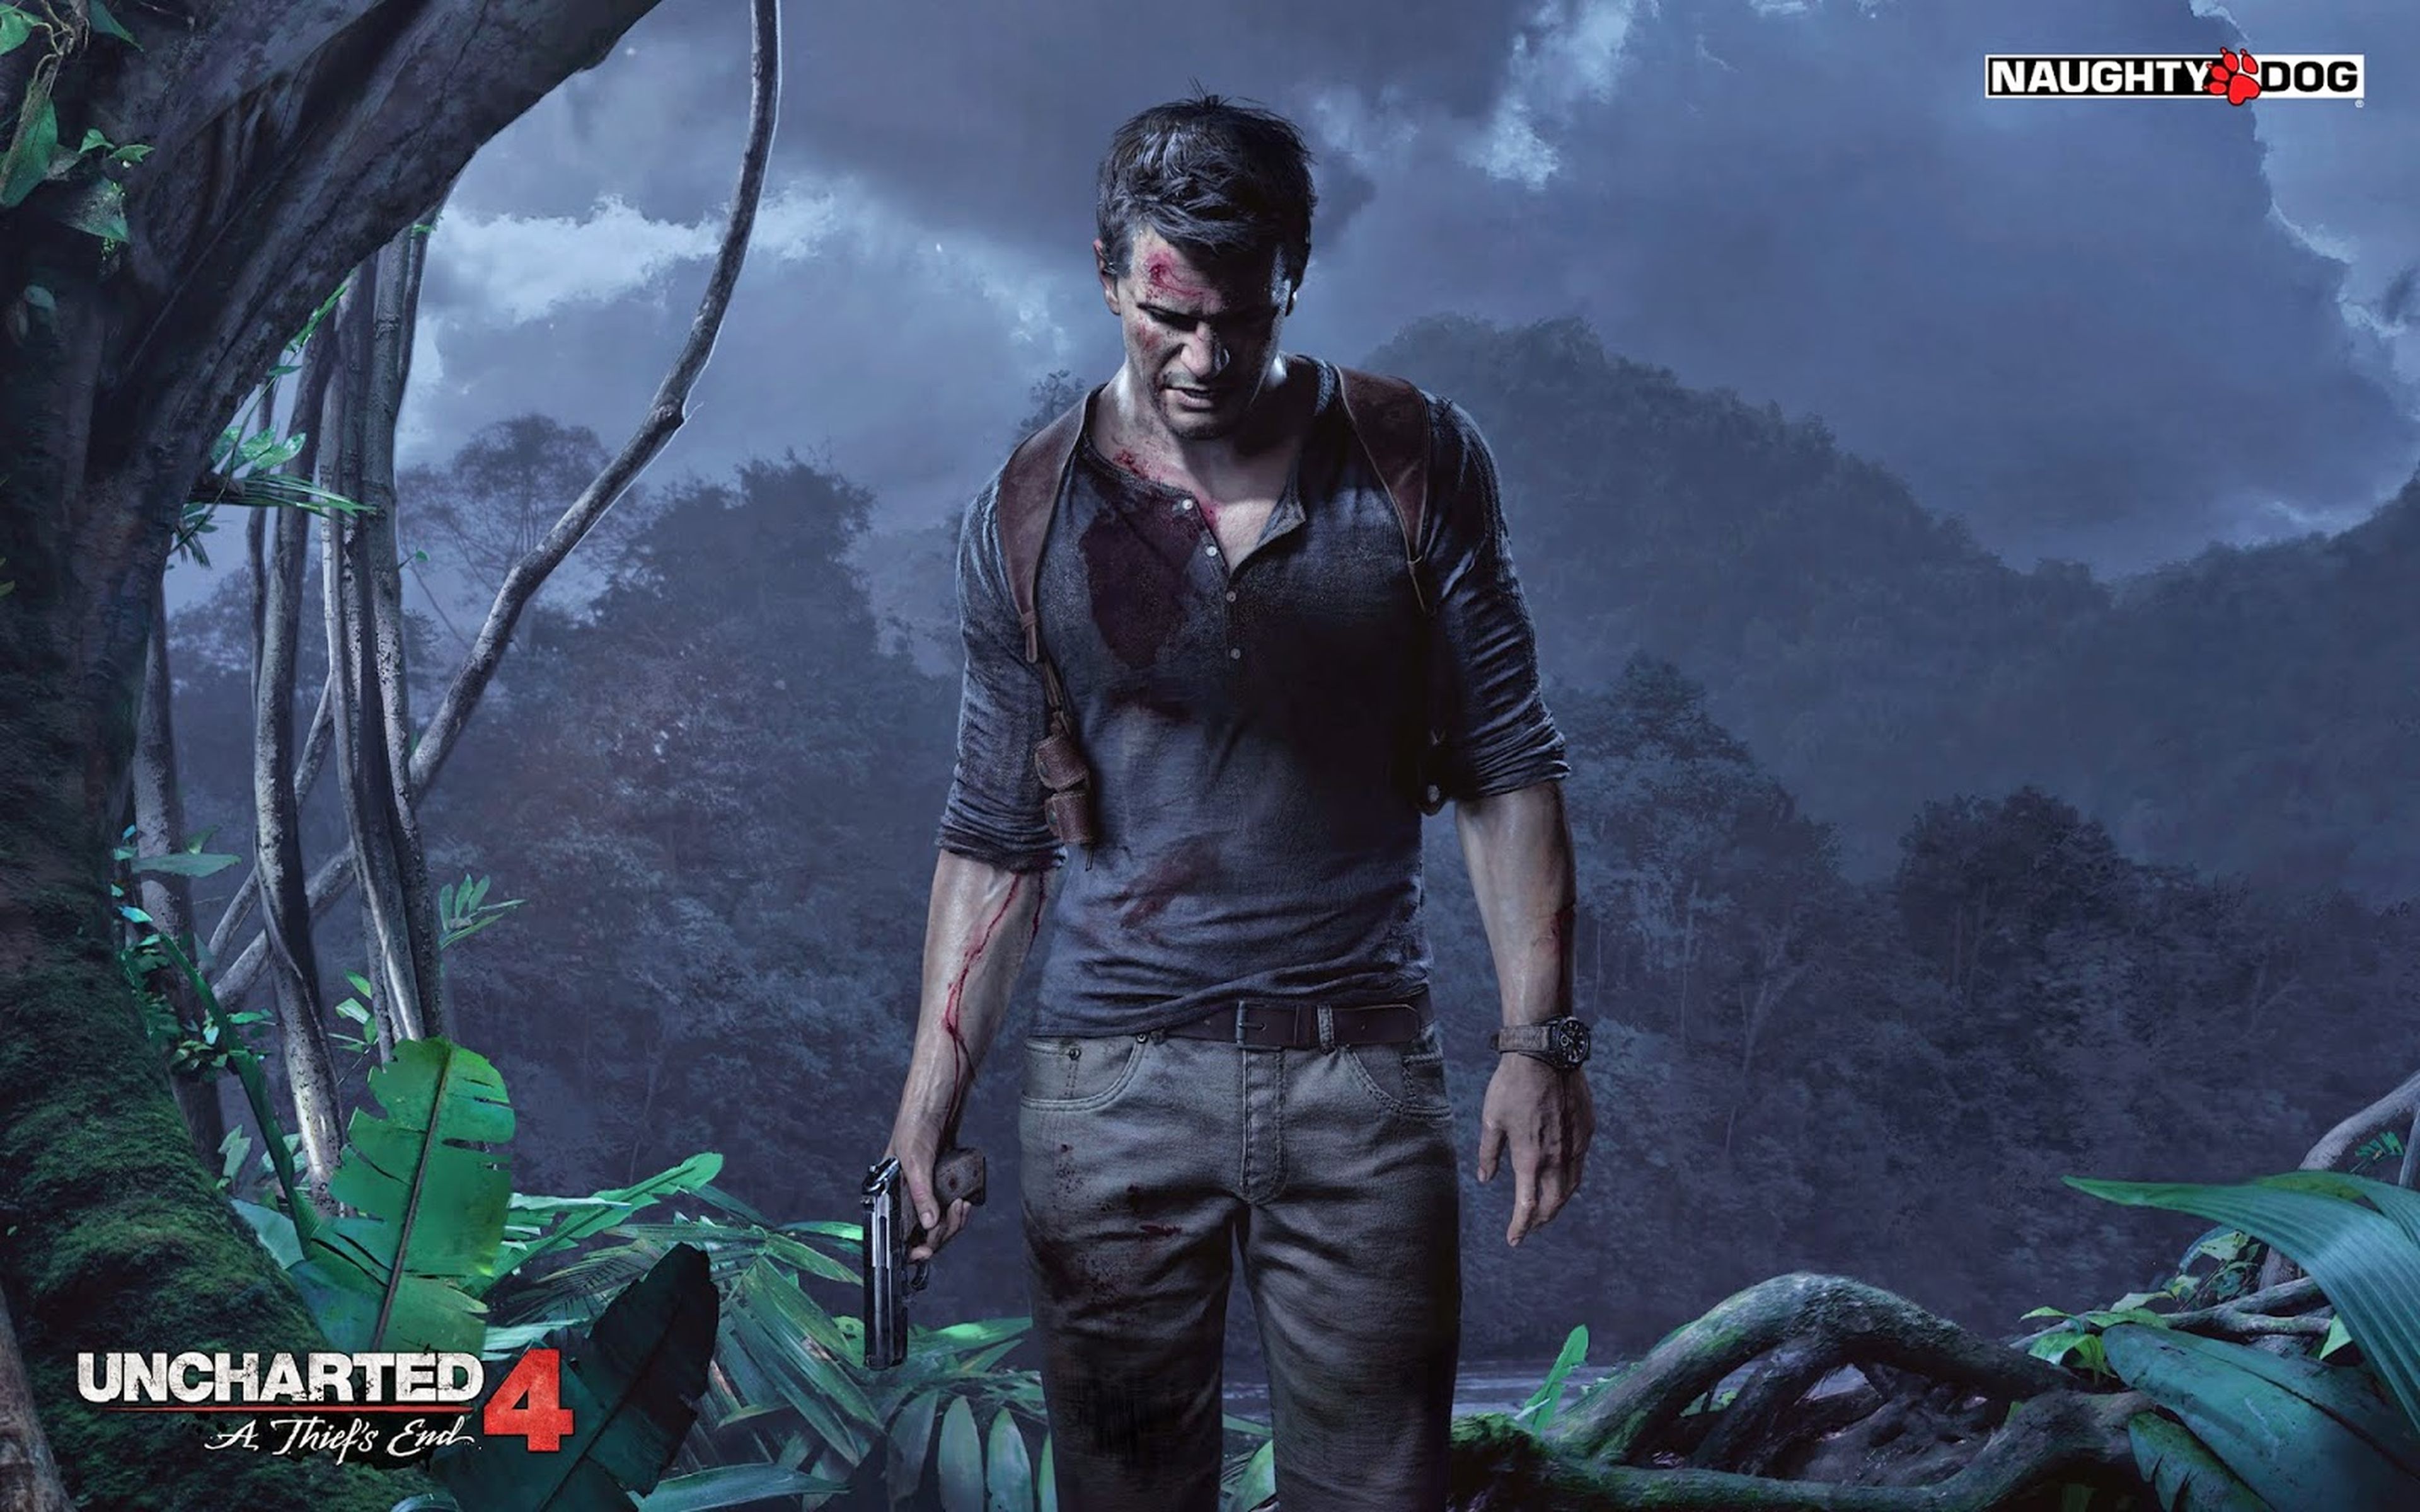 Ex desarrolladores de Naughty Dog: "Uncharted 4 va a ser impresionante"